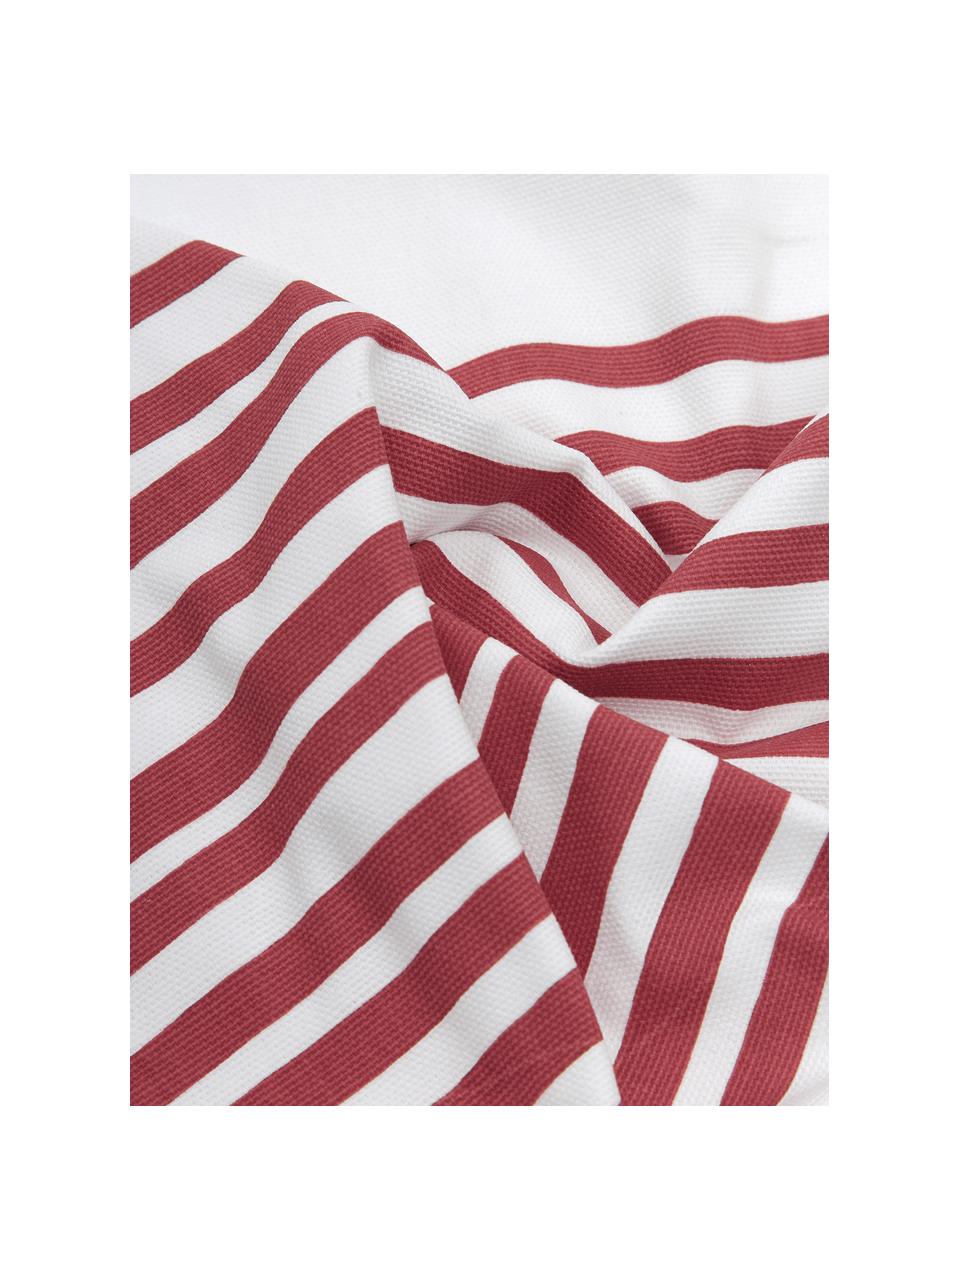 Kissenhülle Corey mit Streifen in Dunkelrot/Weiß, 100% Baumwolle, Weiß, Dunkelrot, 40 x 40 cm